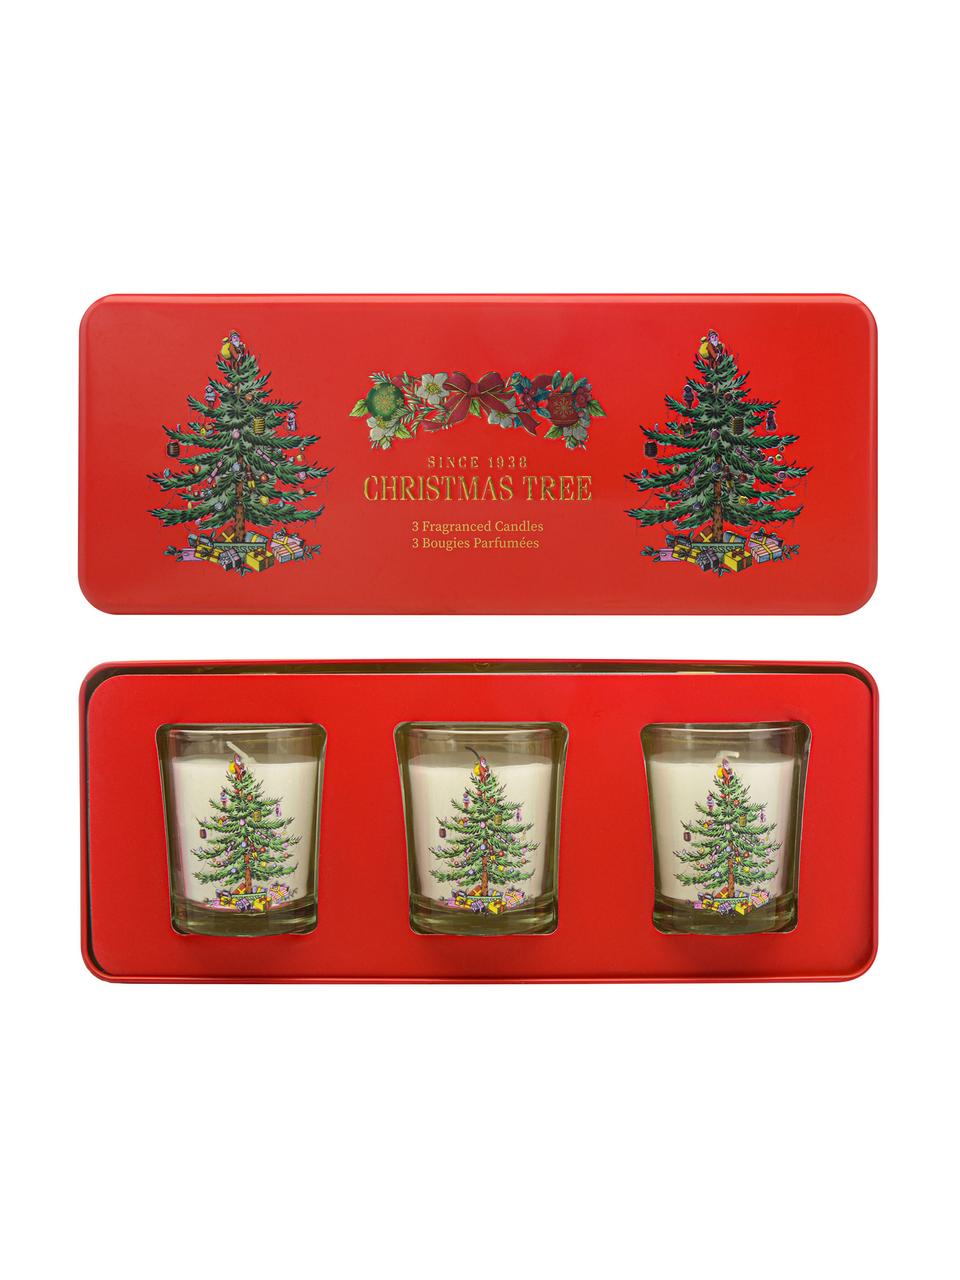 Kerzen Noel mit Metall-Box (Fichtennadeln, Zedernholz. Orange), 3 Stück, Box: Metall, Behälter: Glas, Rot, B 25 x H 6 cm